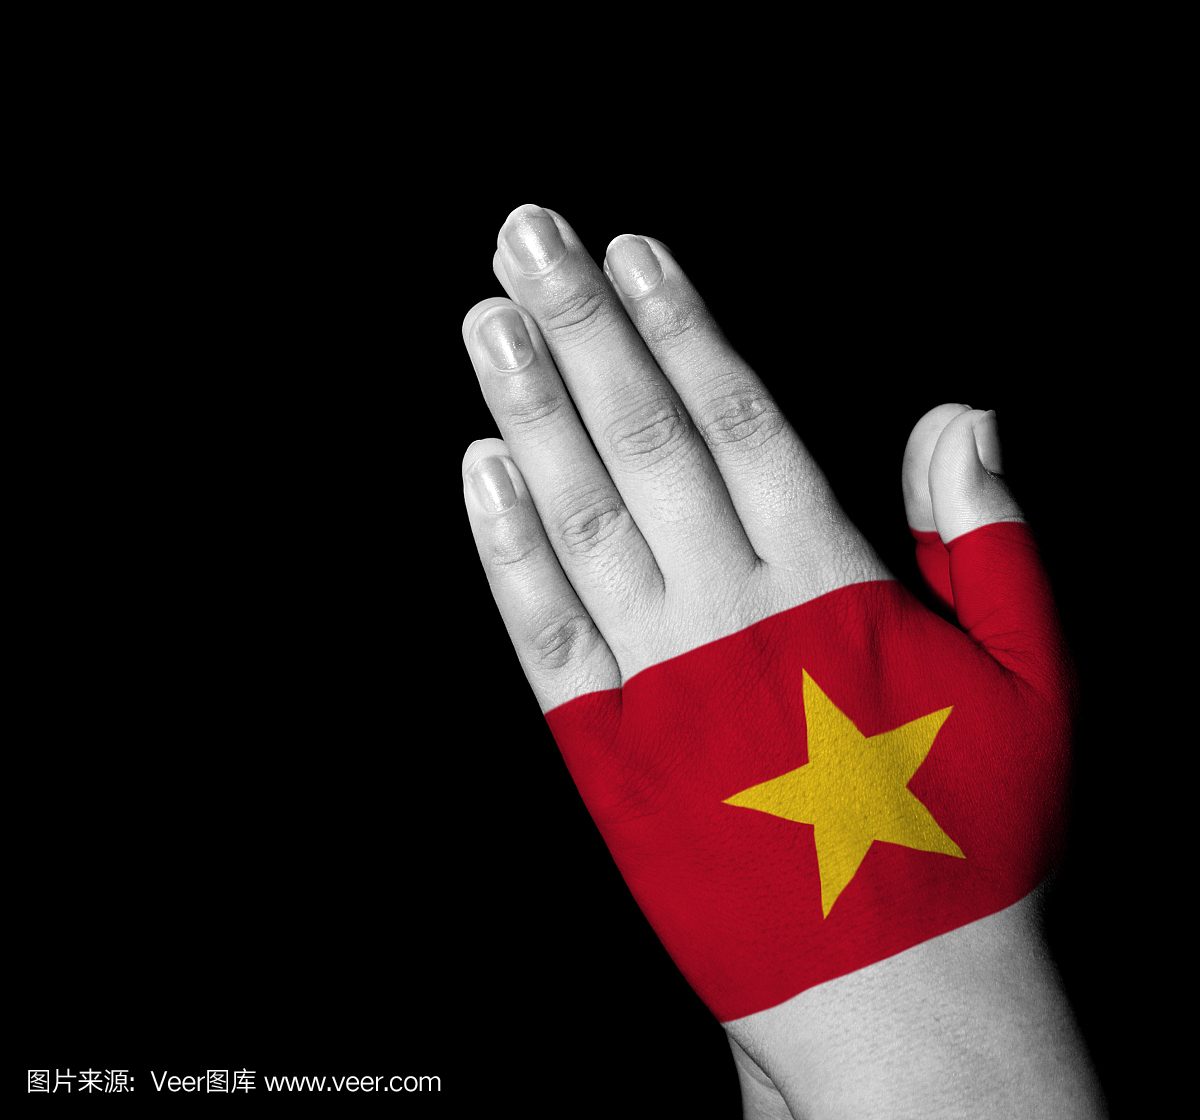 祷告 - 越南国旗画在手上